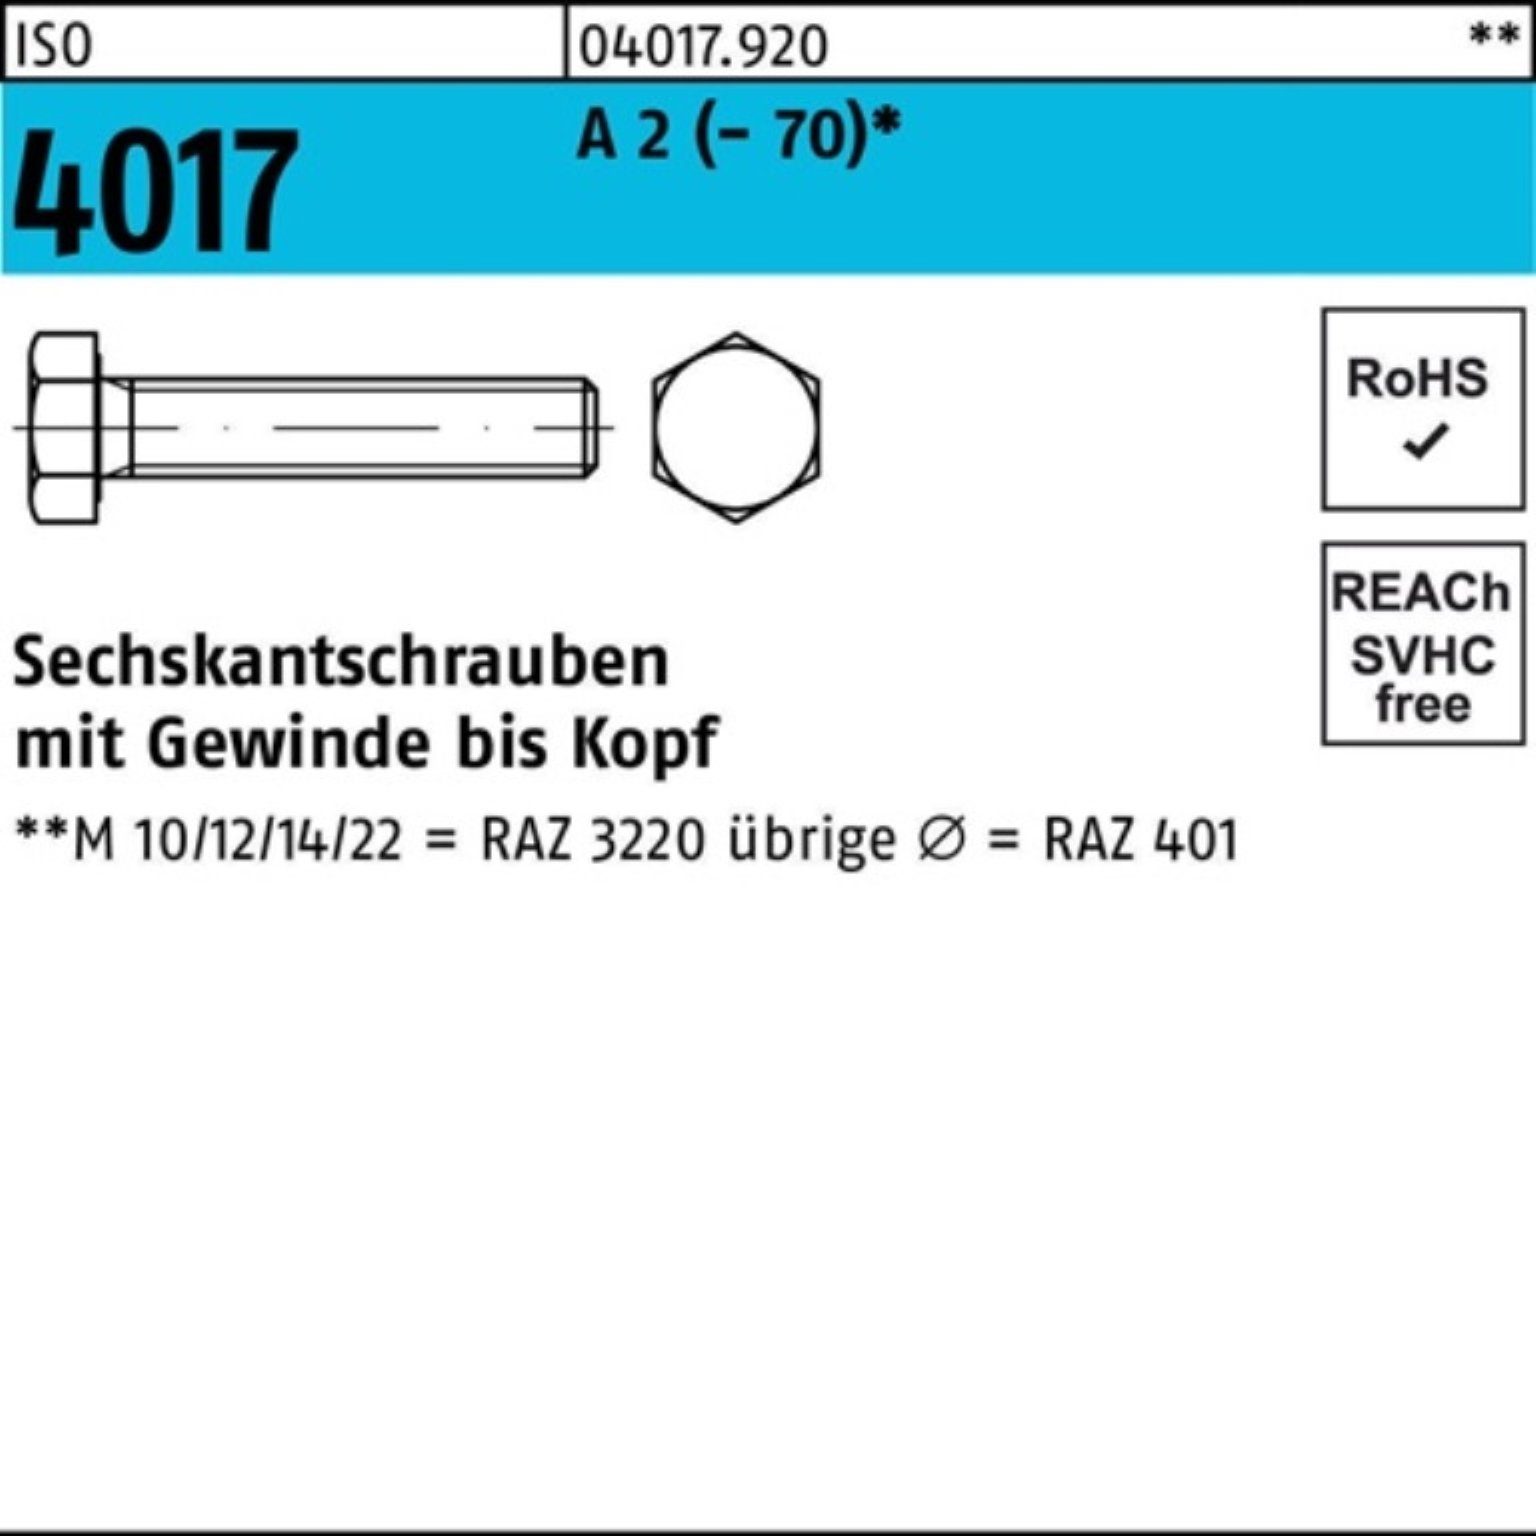 Bufab Sechskantschraube 100er Pack Sechskantschraube ISO 4017 VG M24x 50 A 2 (70) 20 Stück